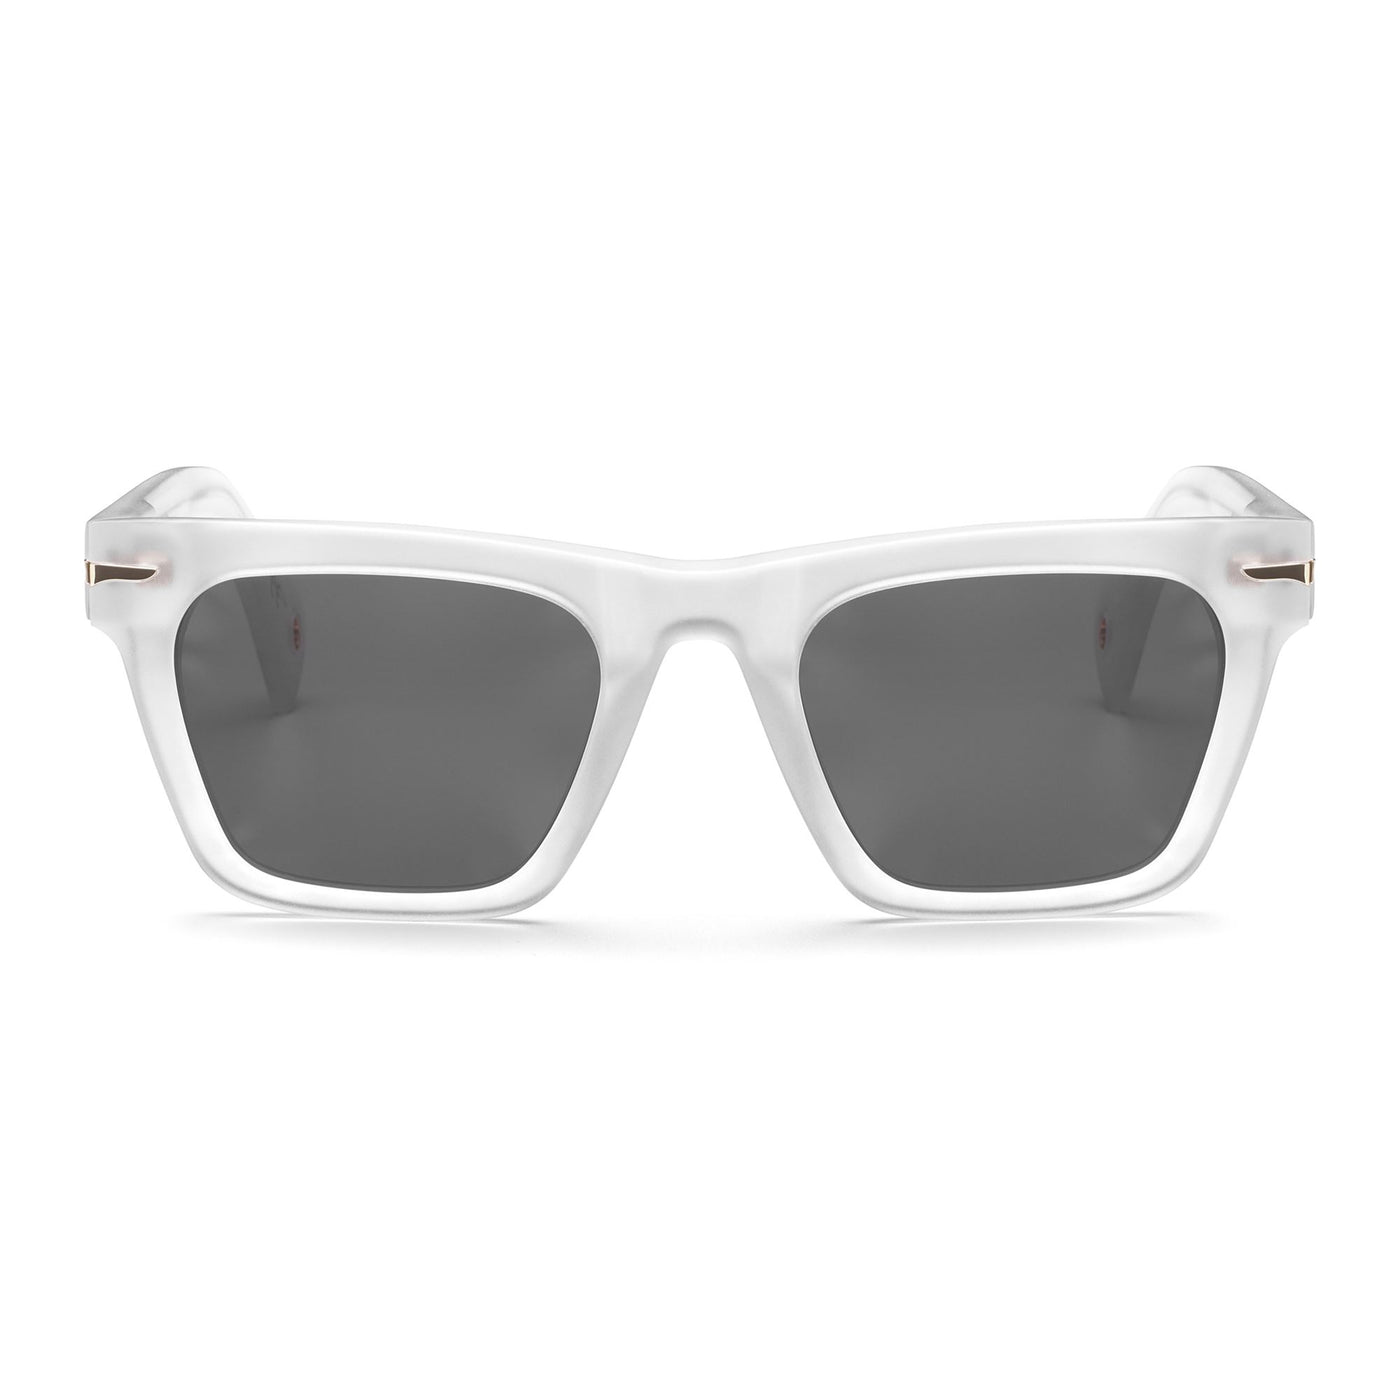 Glasses Unisex PAUL Sunglasses CRYSTAL - SG3 Dressed Side (jpg Rgb)		